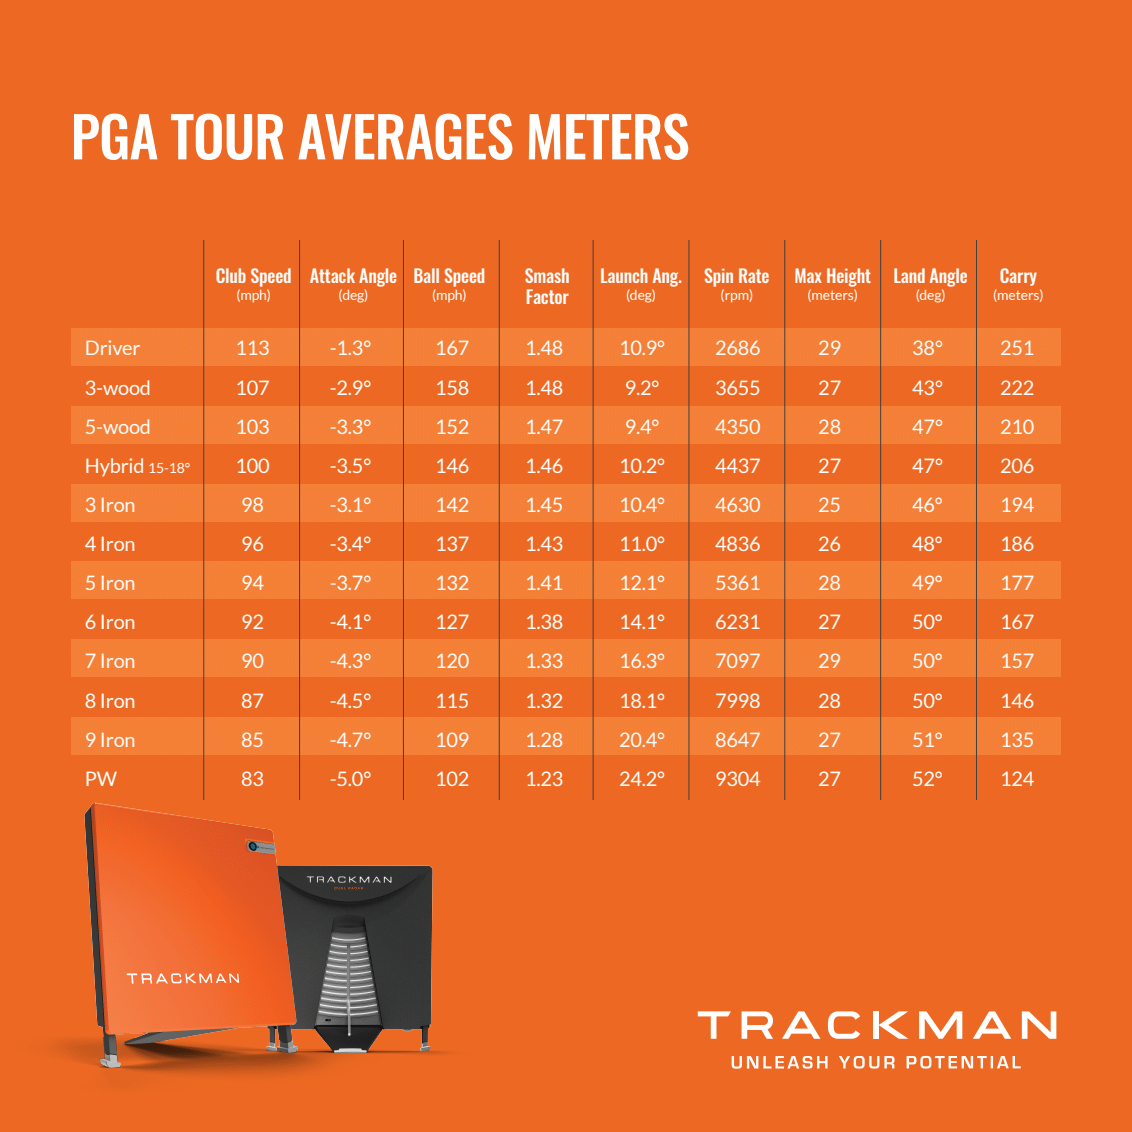 TrackMan tour averages